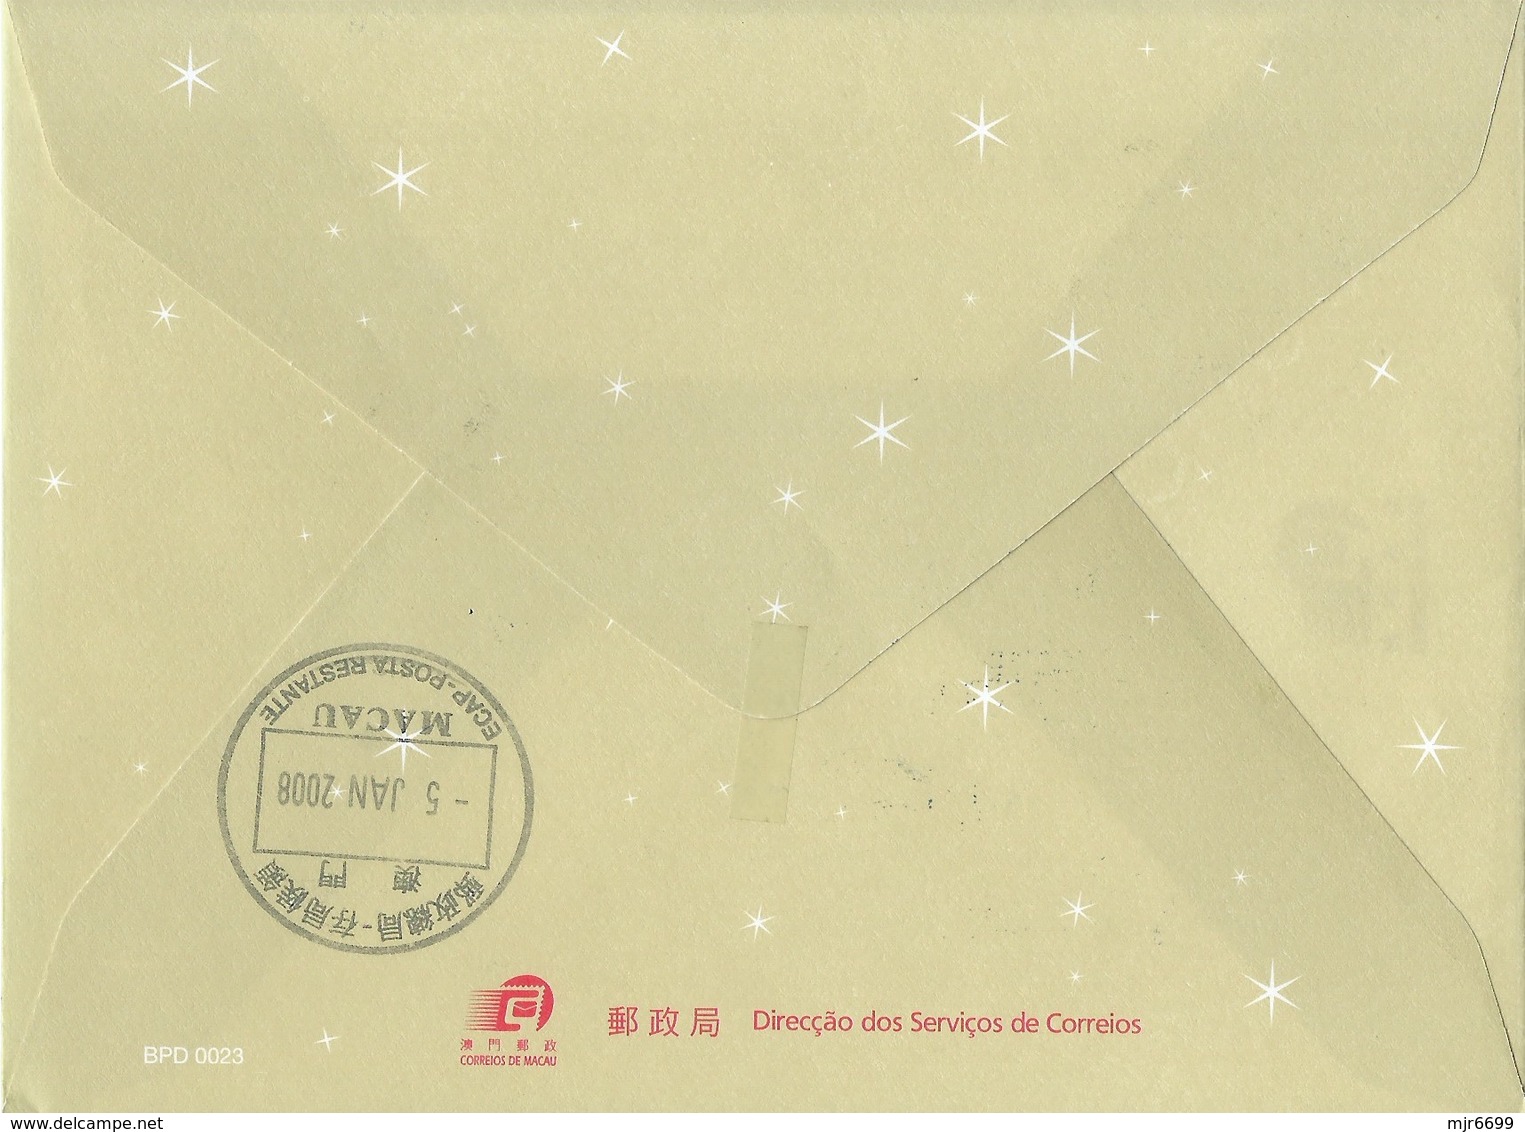 MACAU 2007 CHRISTMAS GREETING CARD & POSTAGE PAID COVER - Enteros Postales